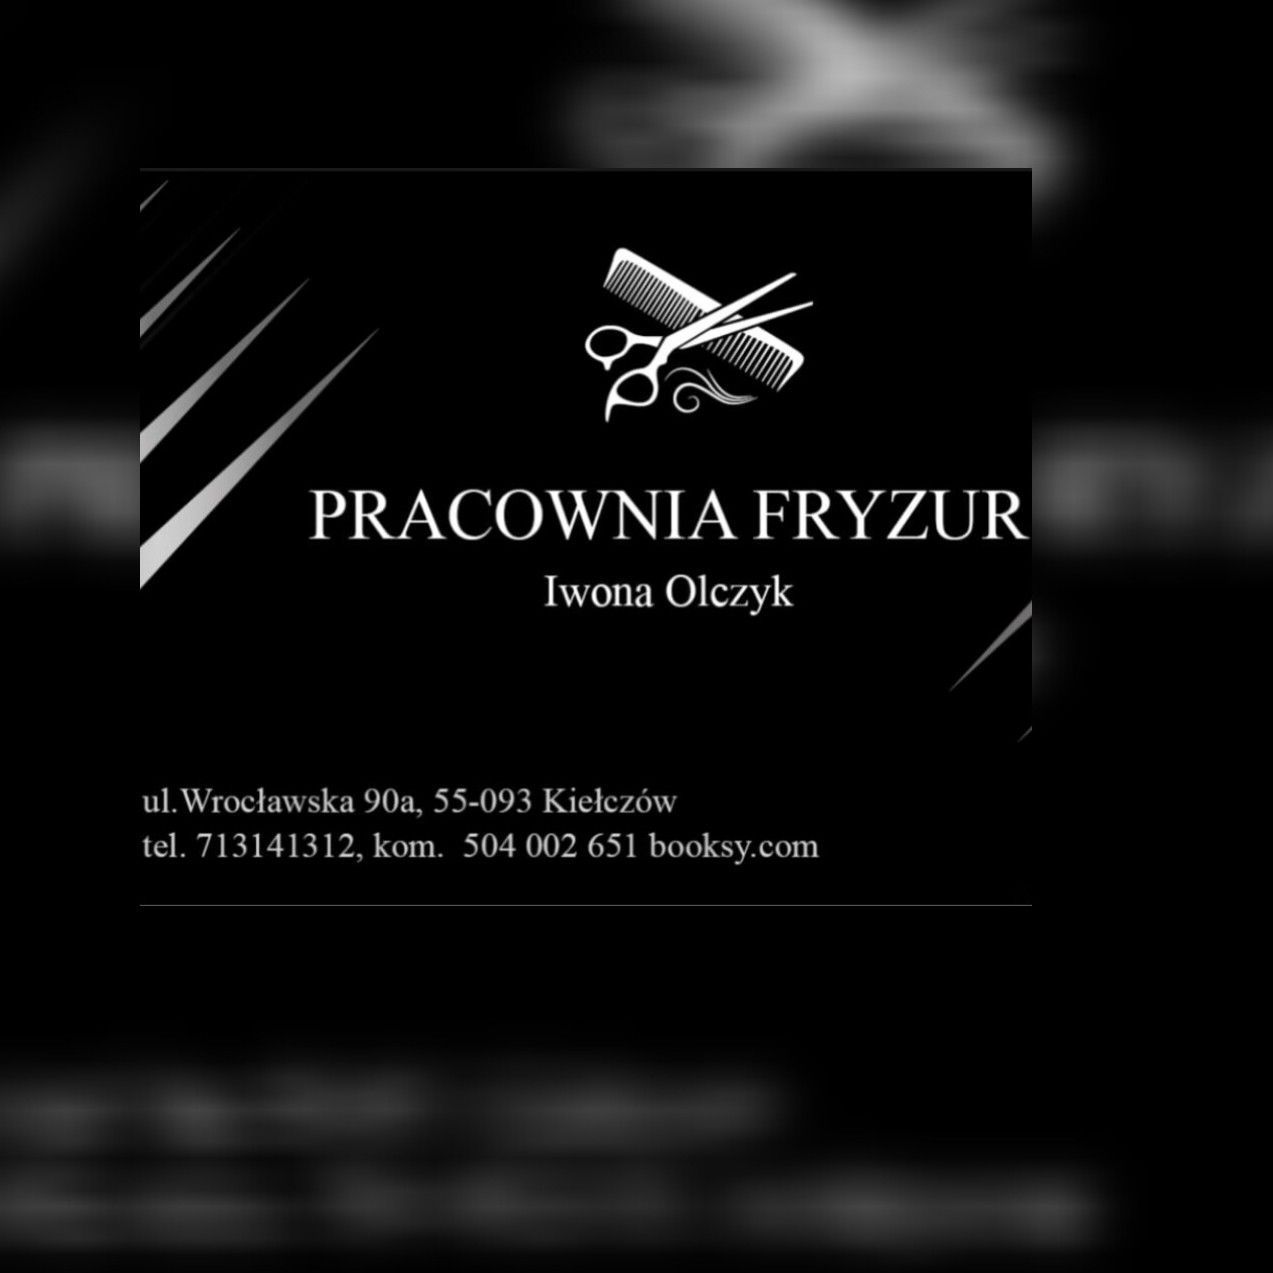 Pracownia Fryzur Iwona Olczyk, Wrocławska 90A, 55-093, Kiełczów